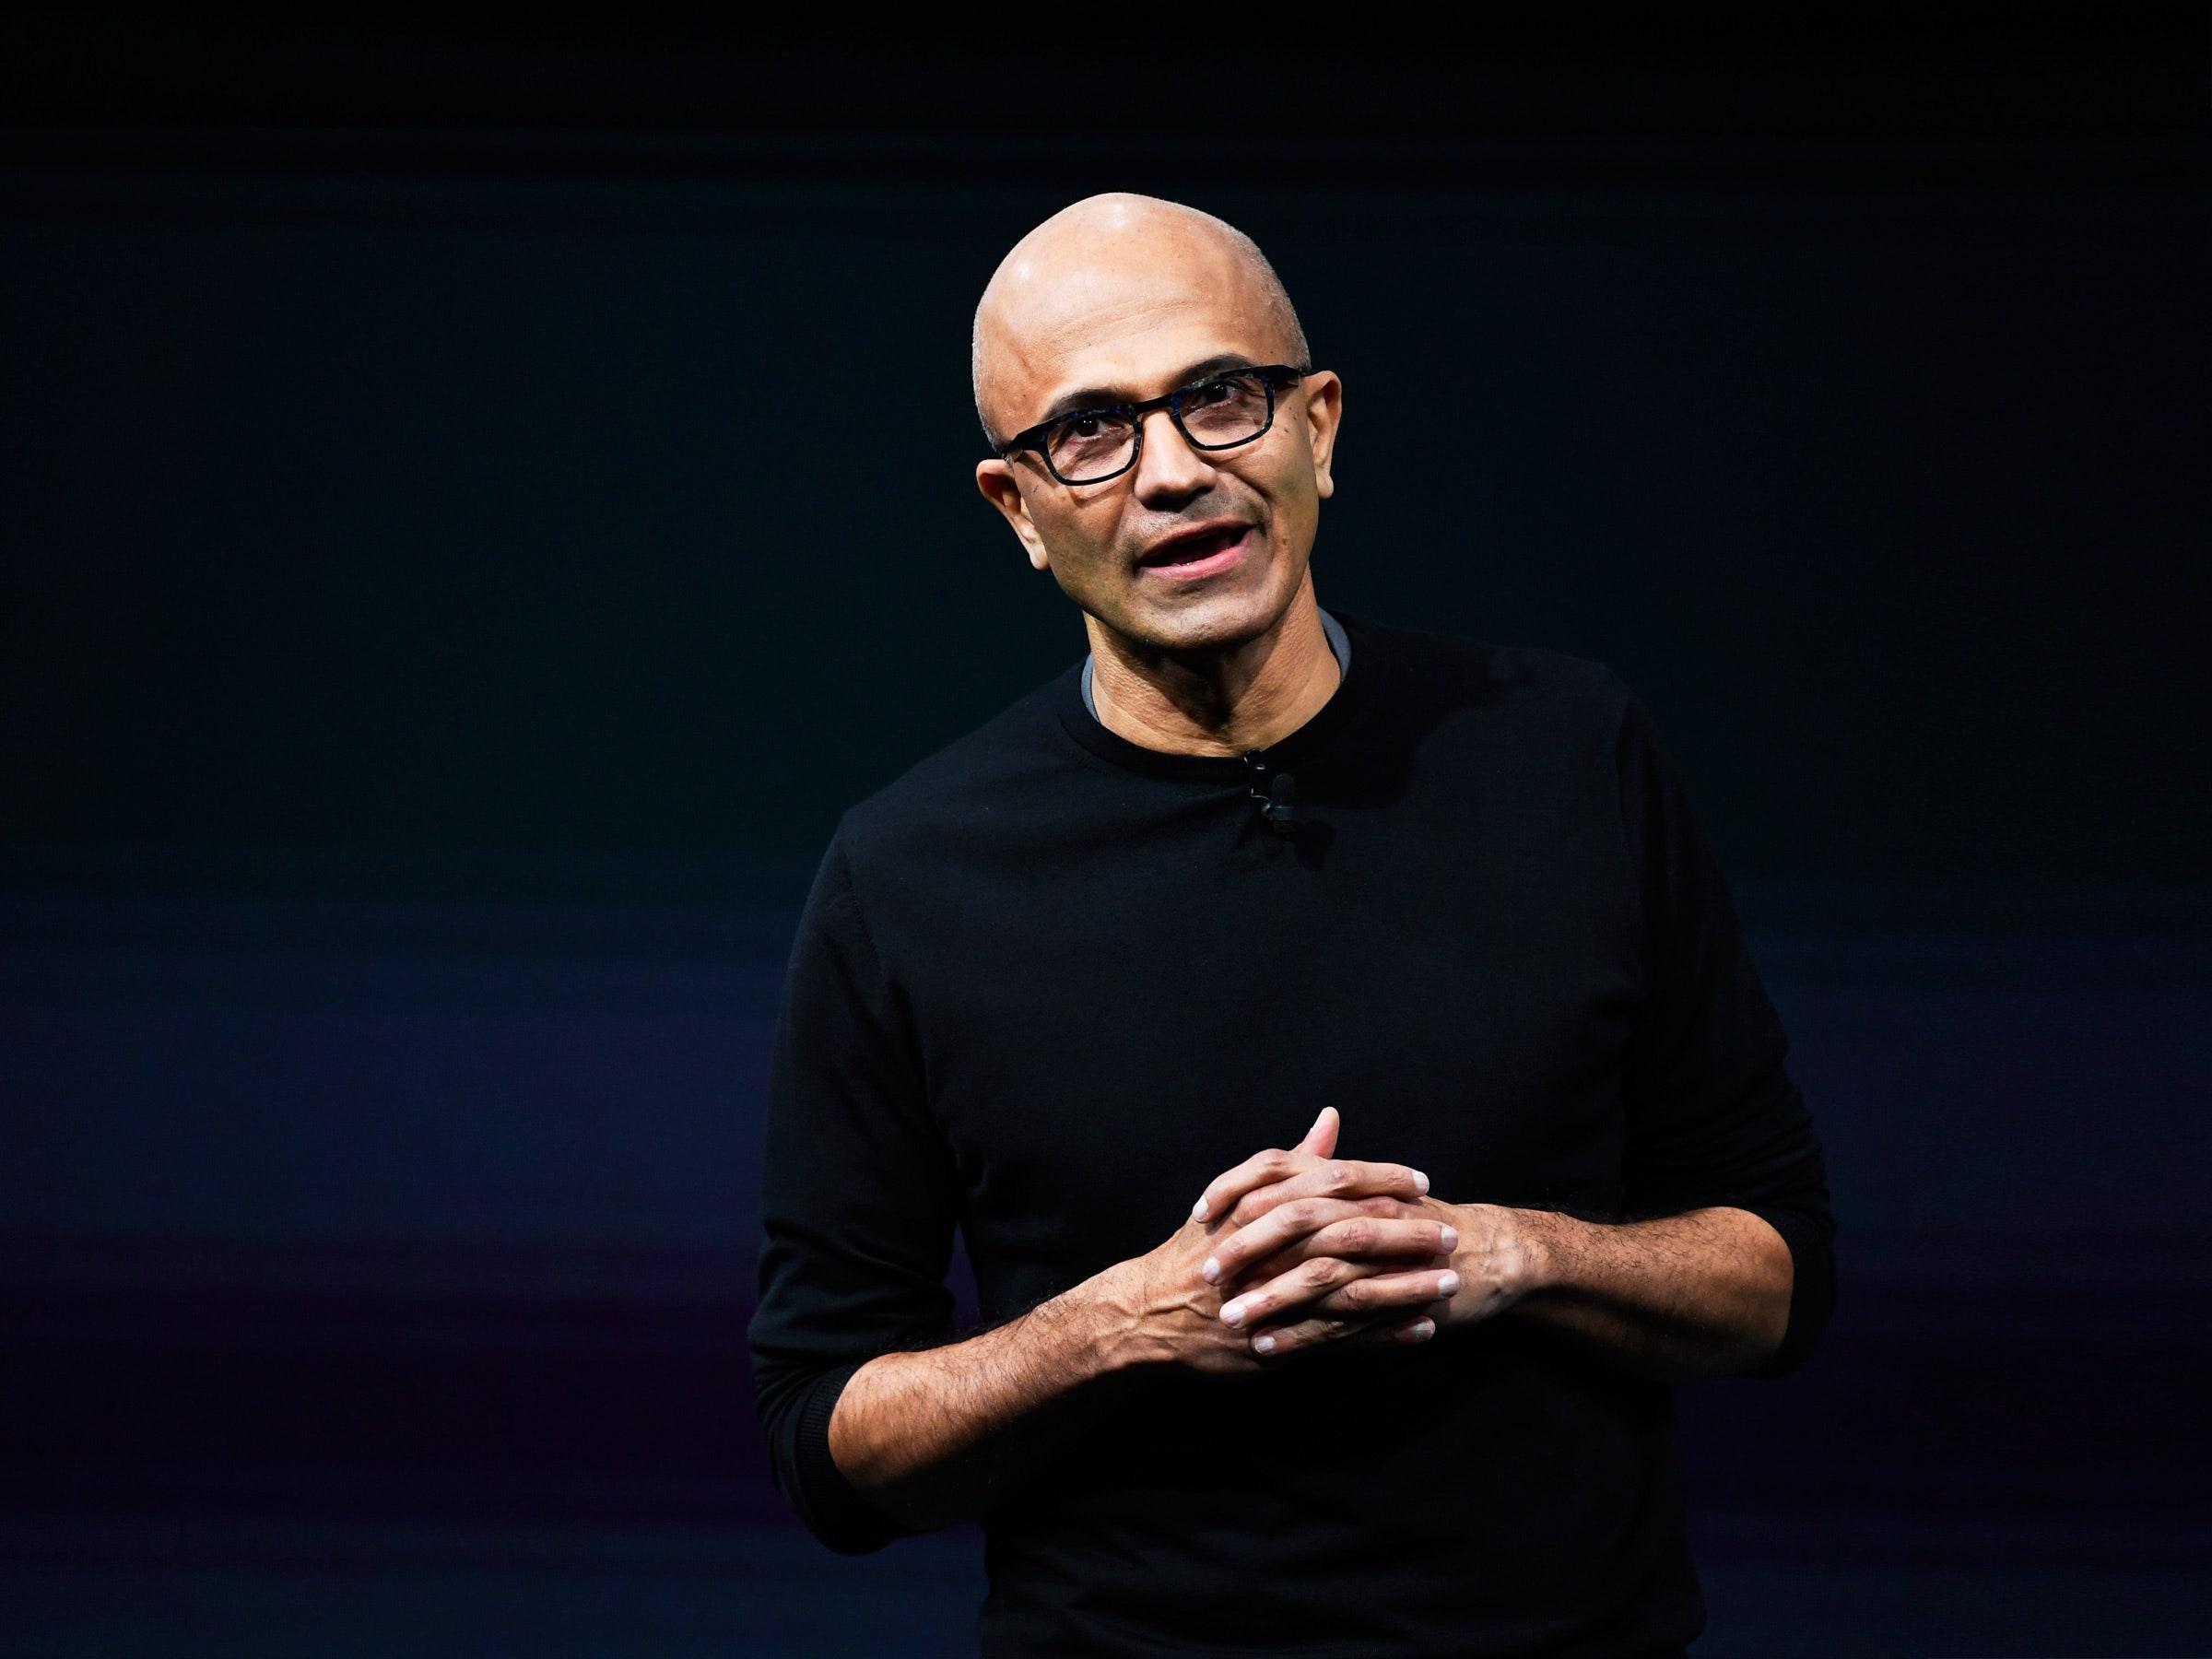 El consejo que cambió la vida del CEO de Microsoft, Satya Nadella